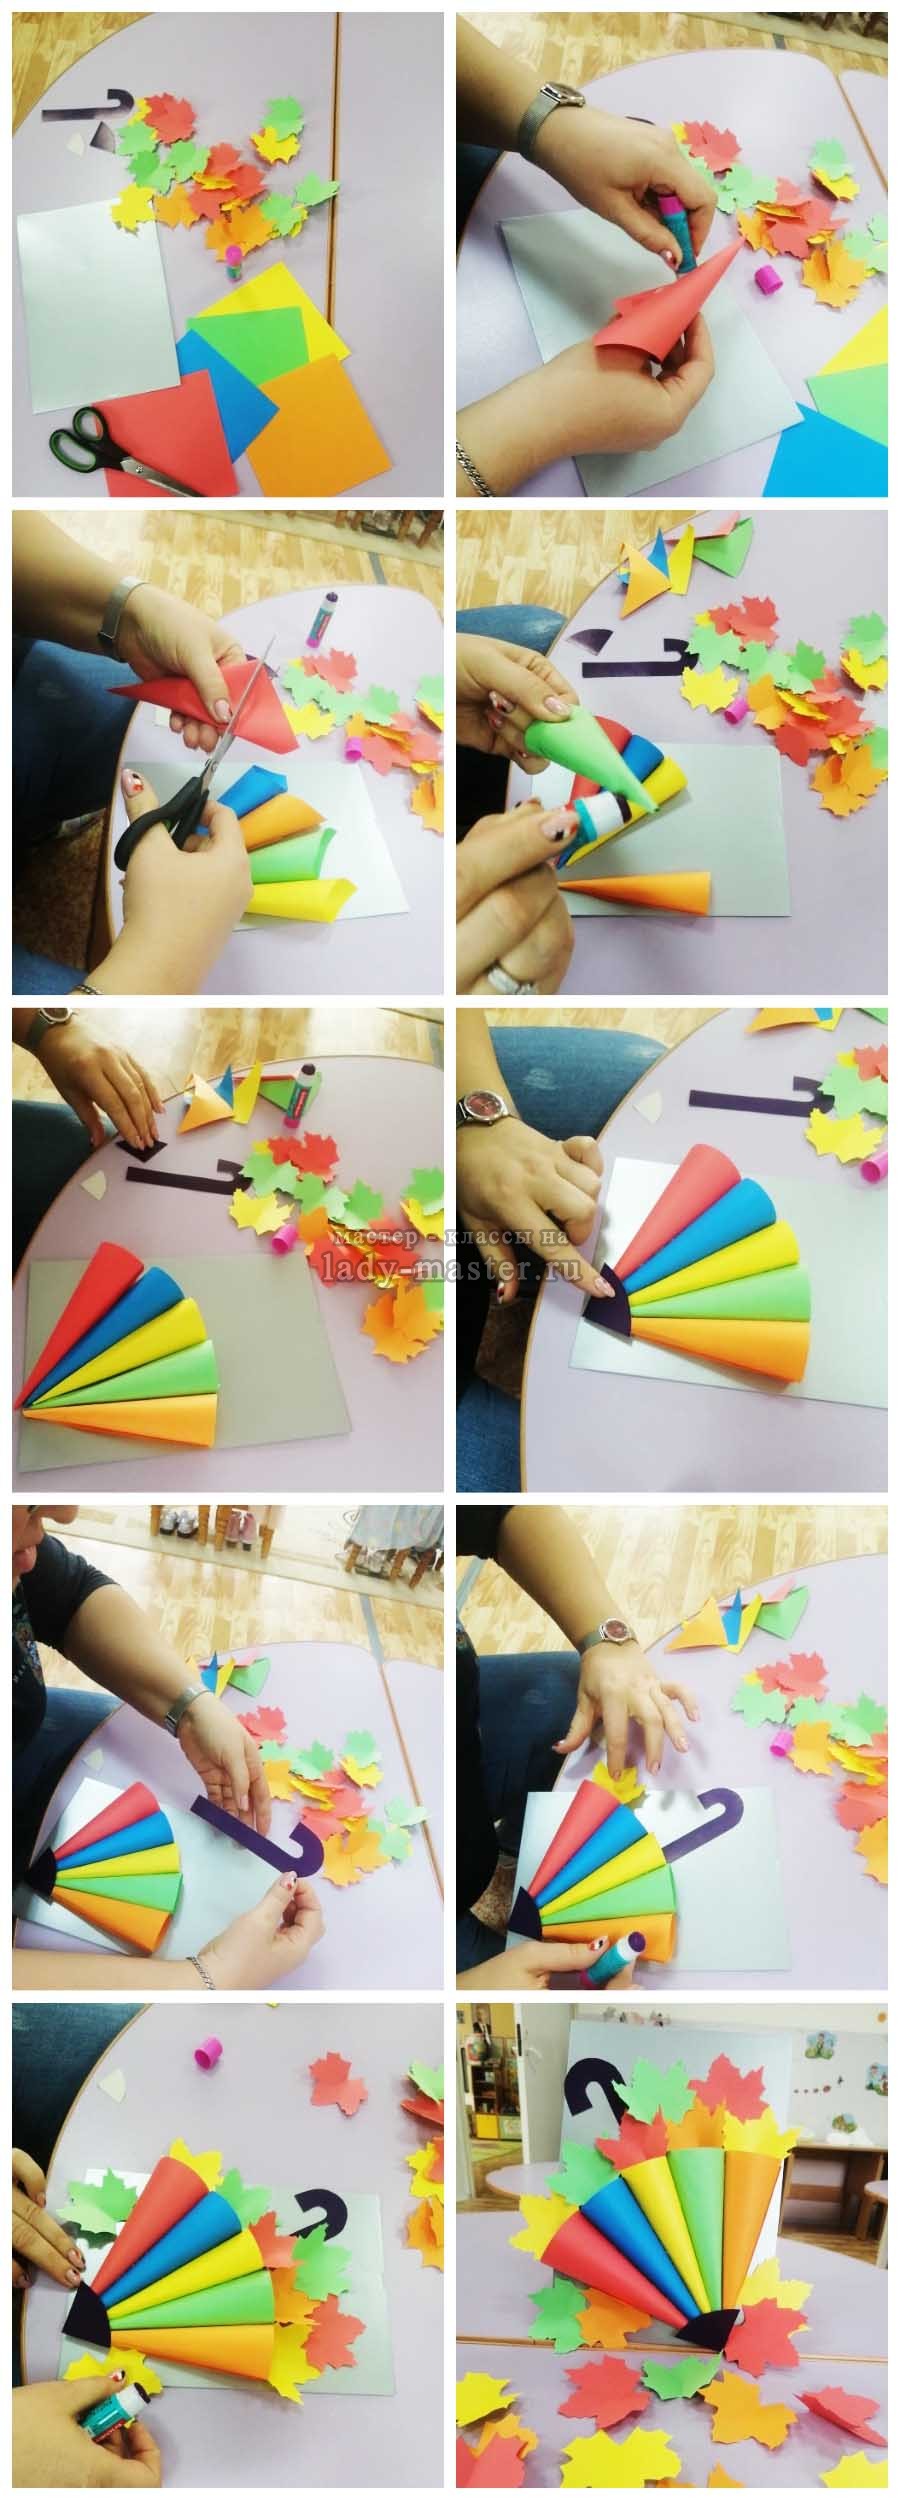 Оригами зонтик из бумаги для детей: пошаговые инструкции